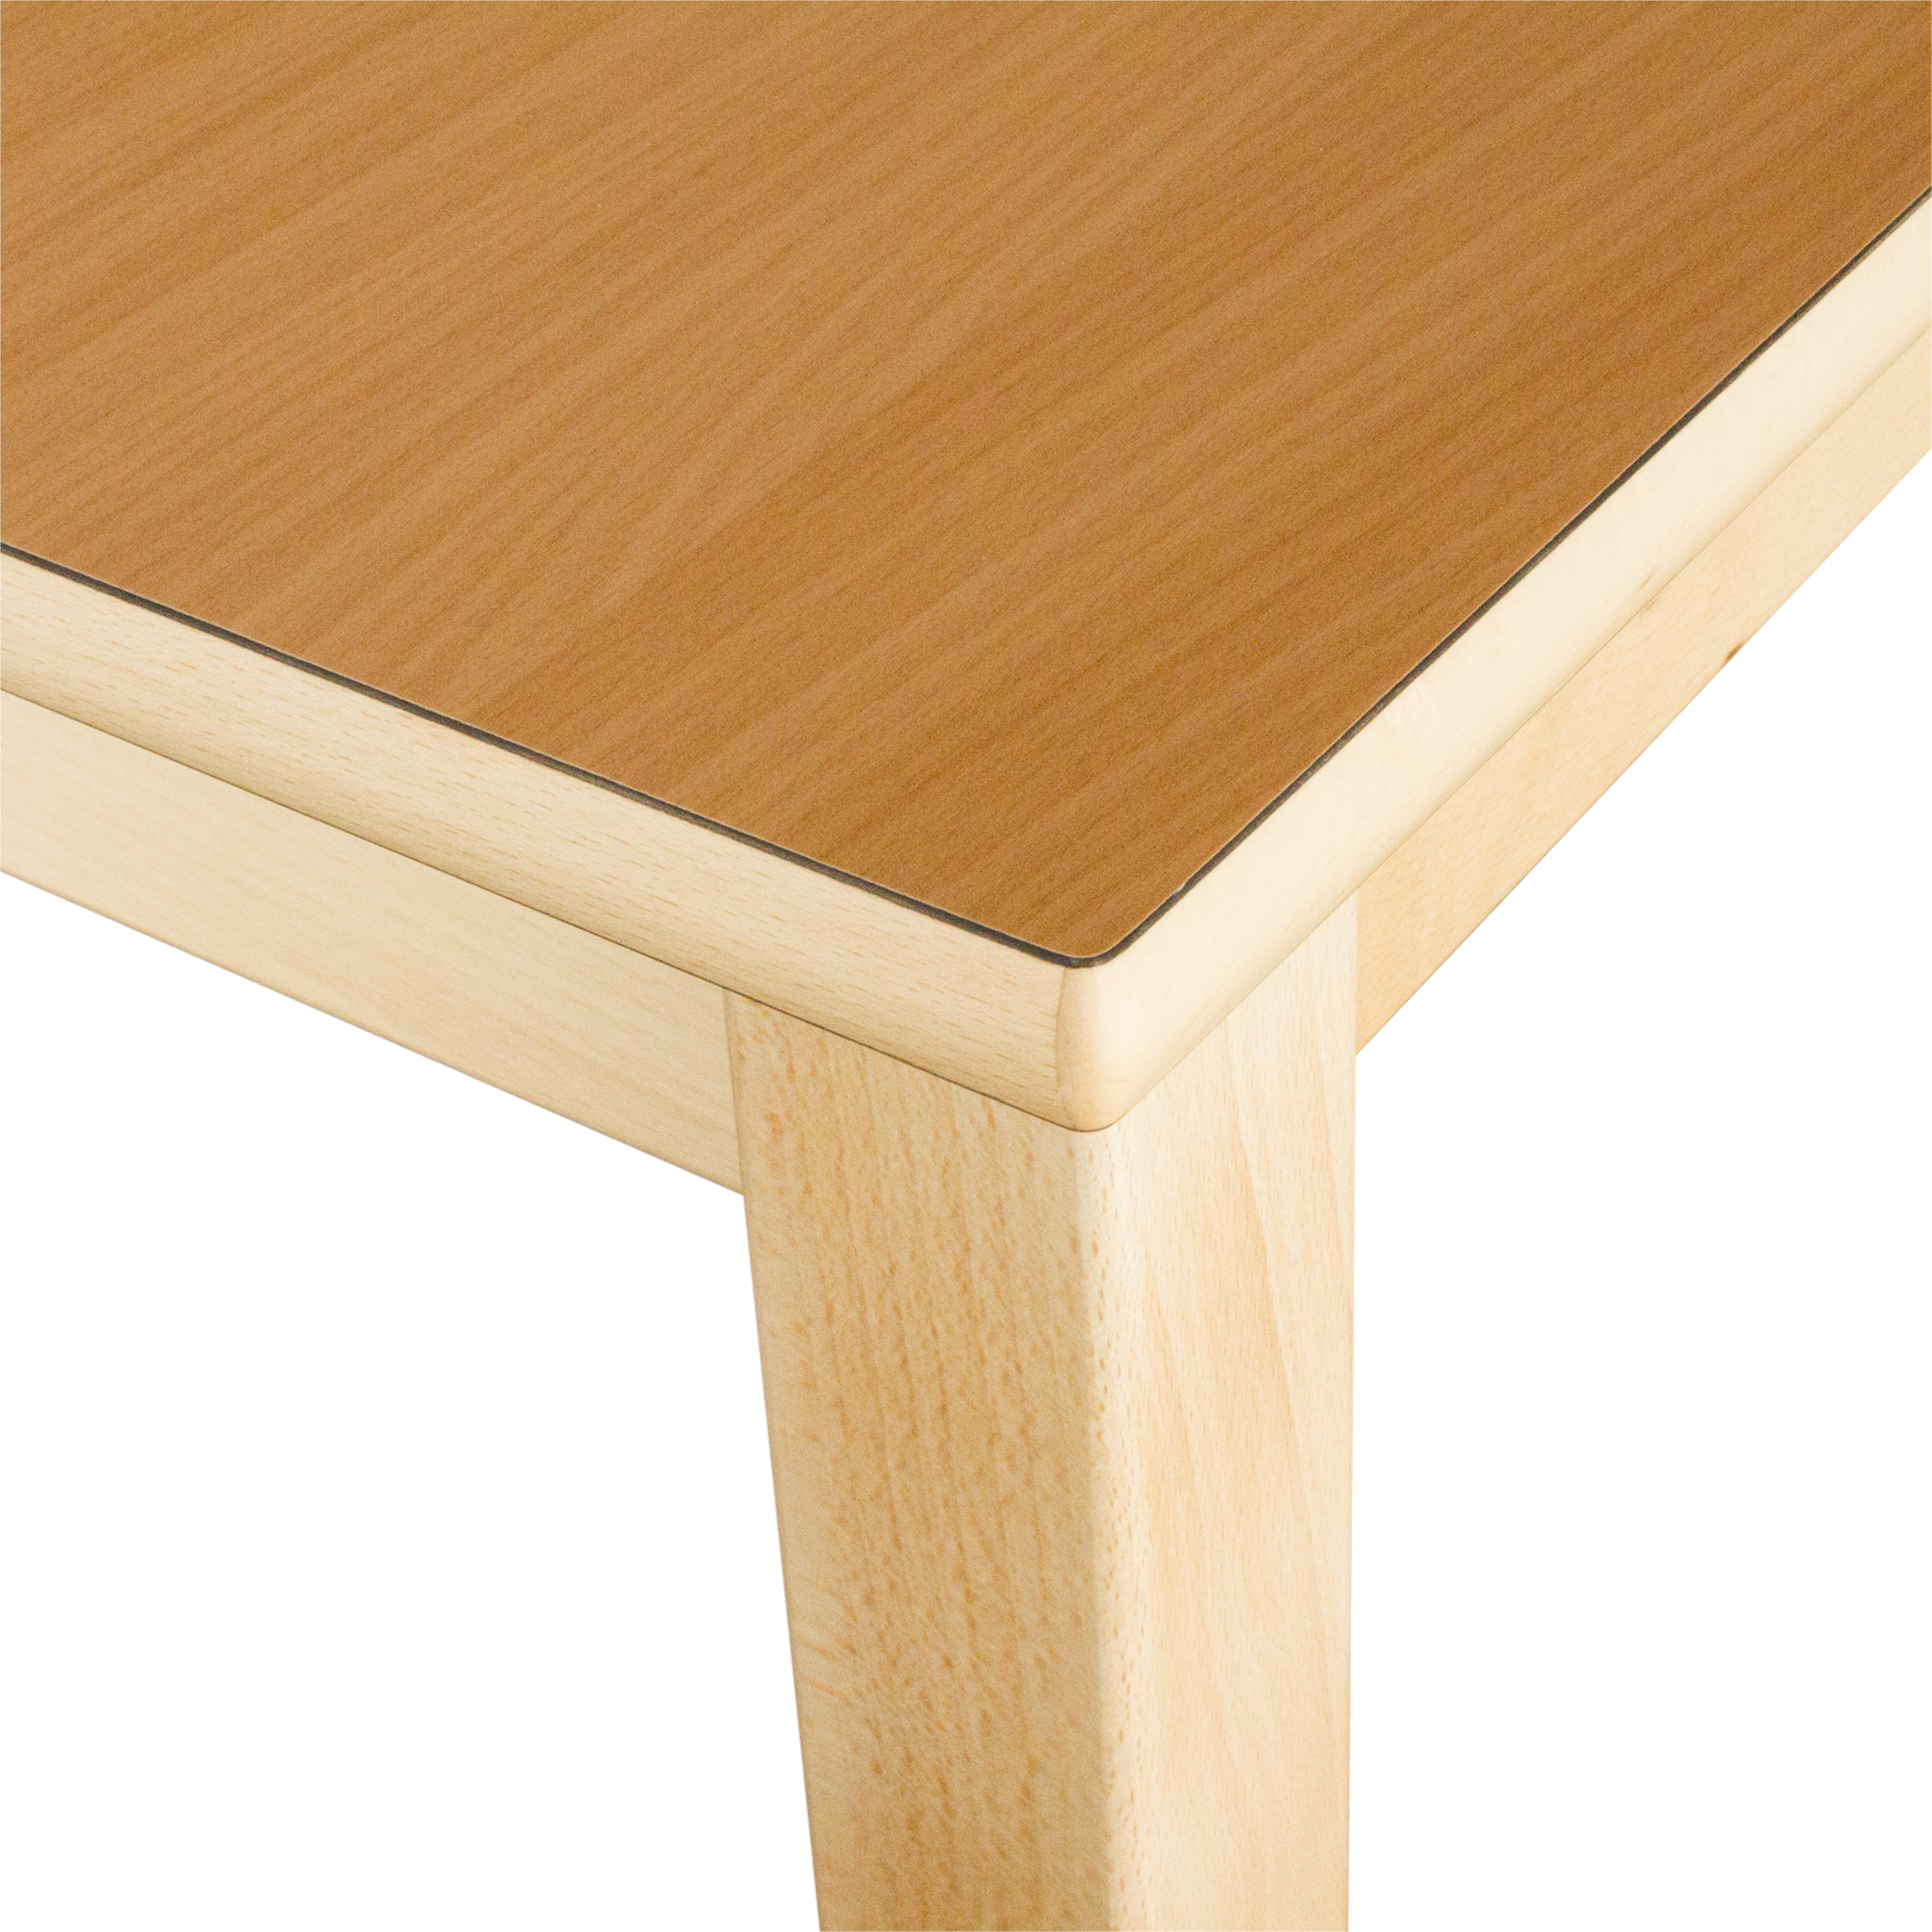 Halbkreis-Tisch, Durchmesser 120 cm, Tischhöhe 40 cm